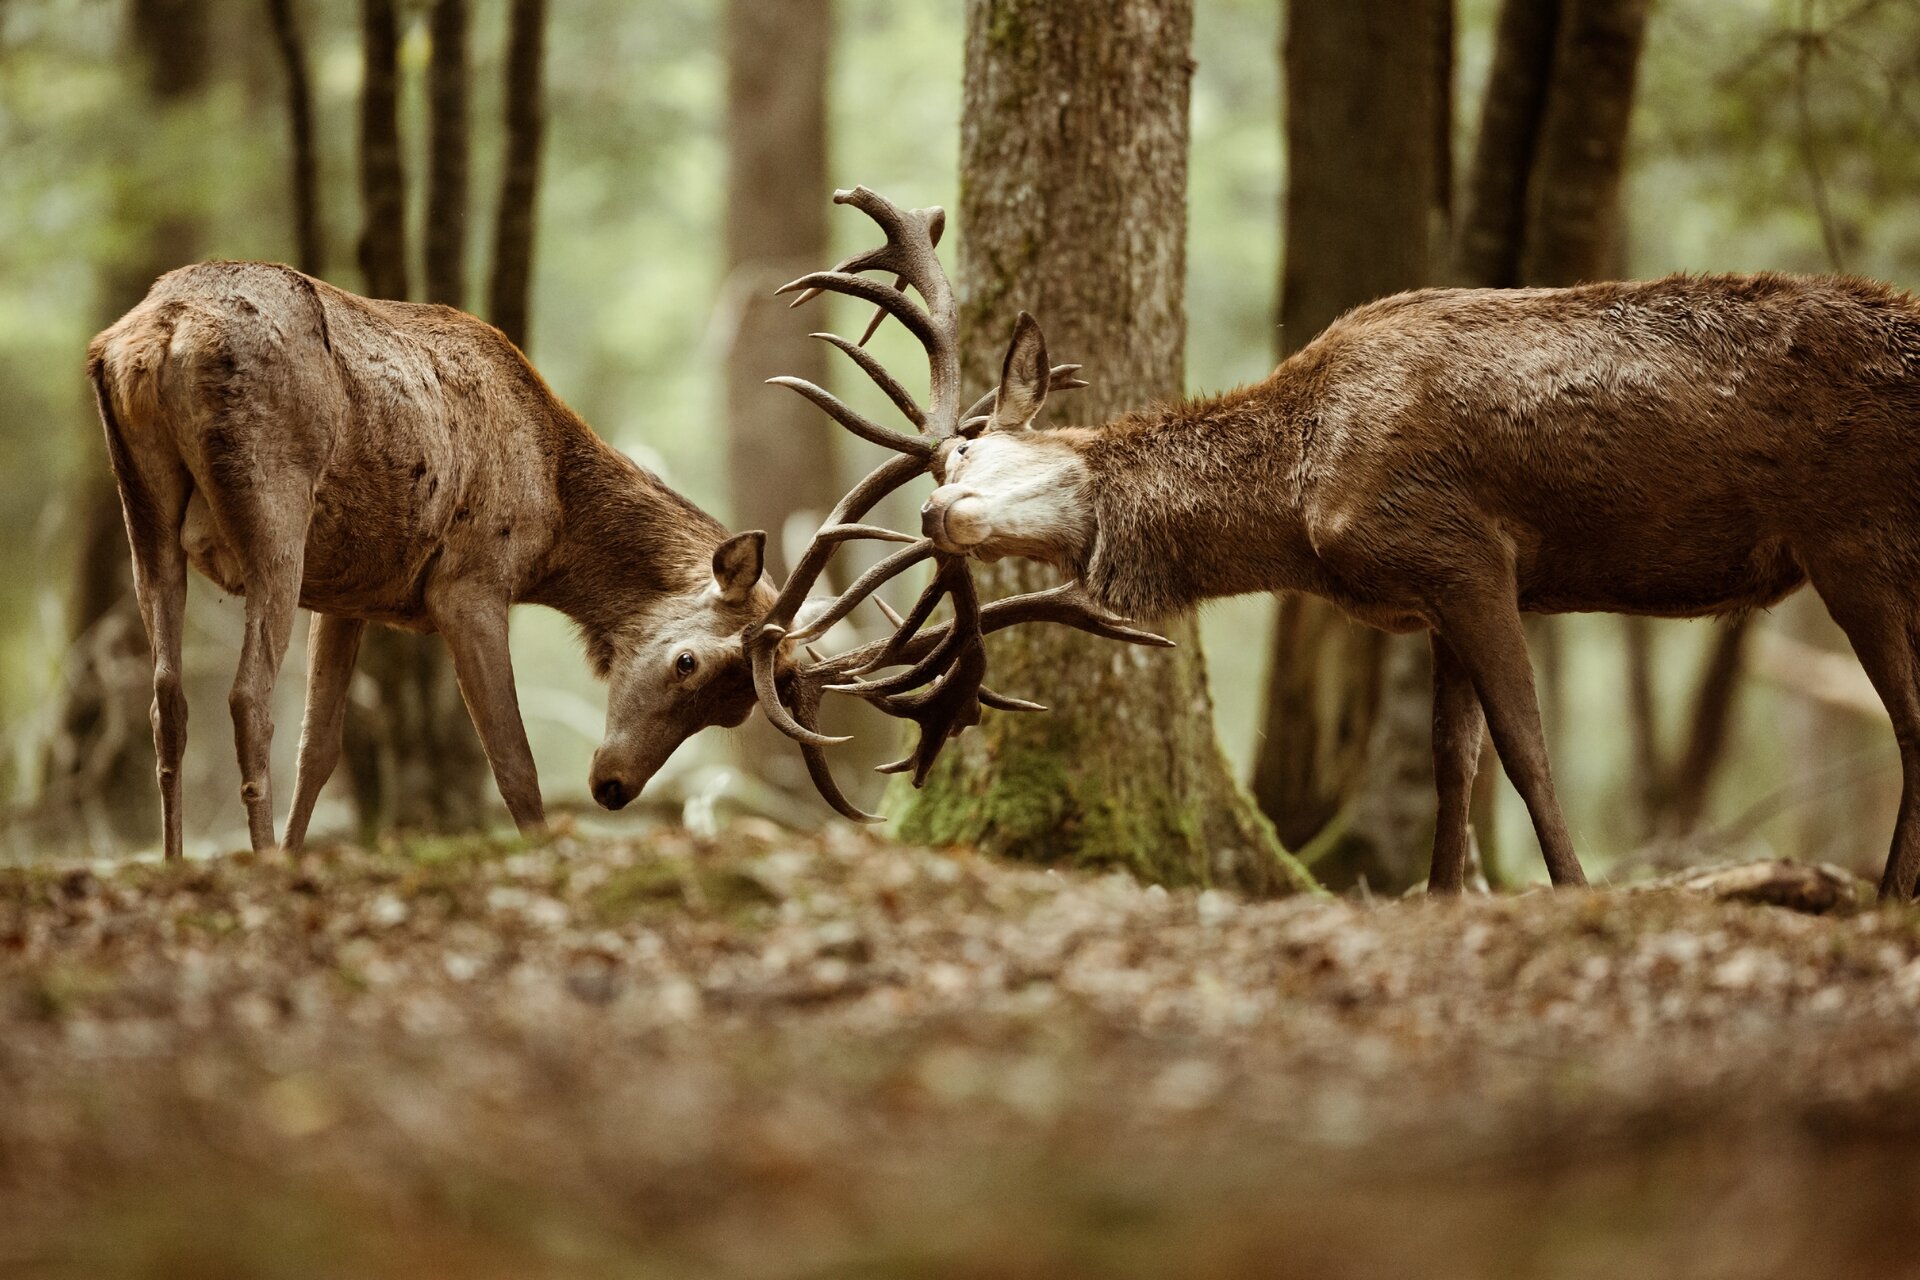 Ilustracja przedstawia dwa jelenie. Zwierzęta znajdują się w lesie, wyglądają, jakby walczyły na poroża. W tle widoczne są liczne drzewa.